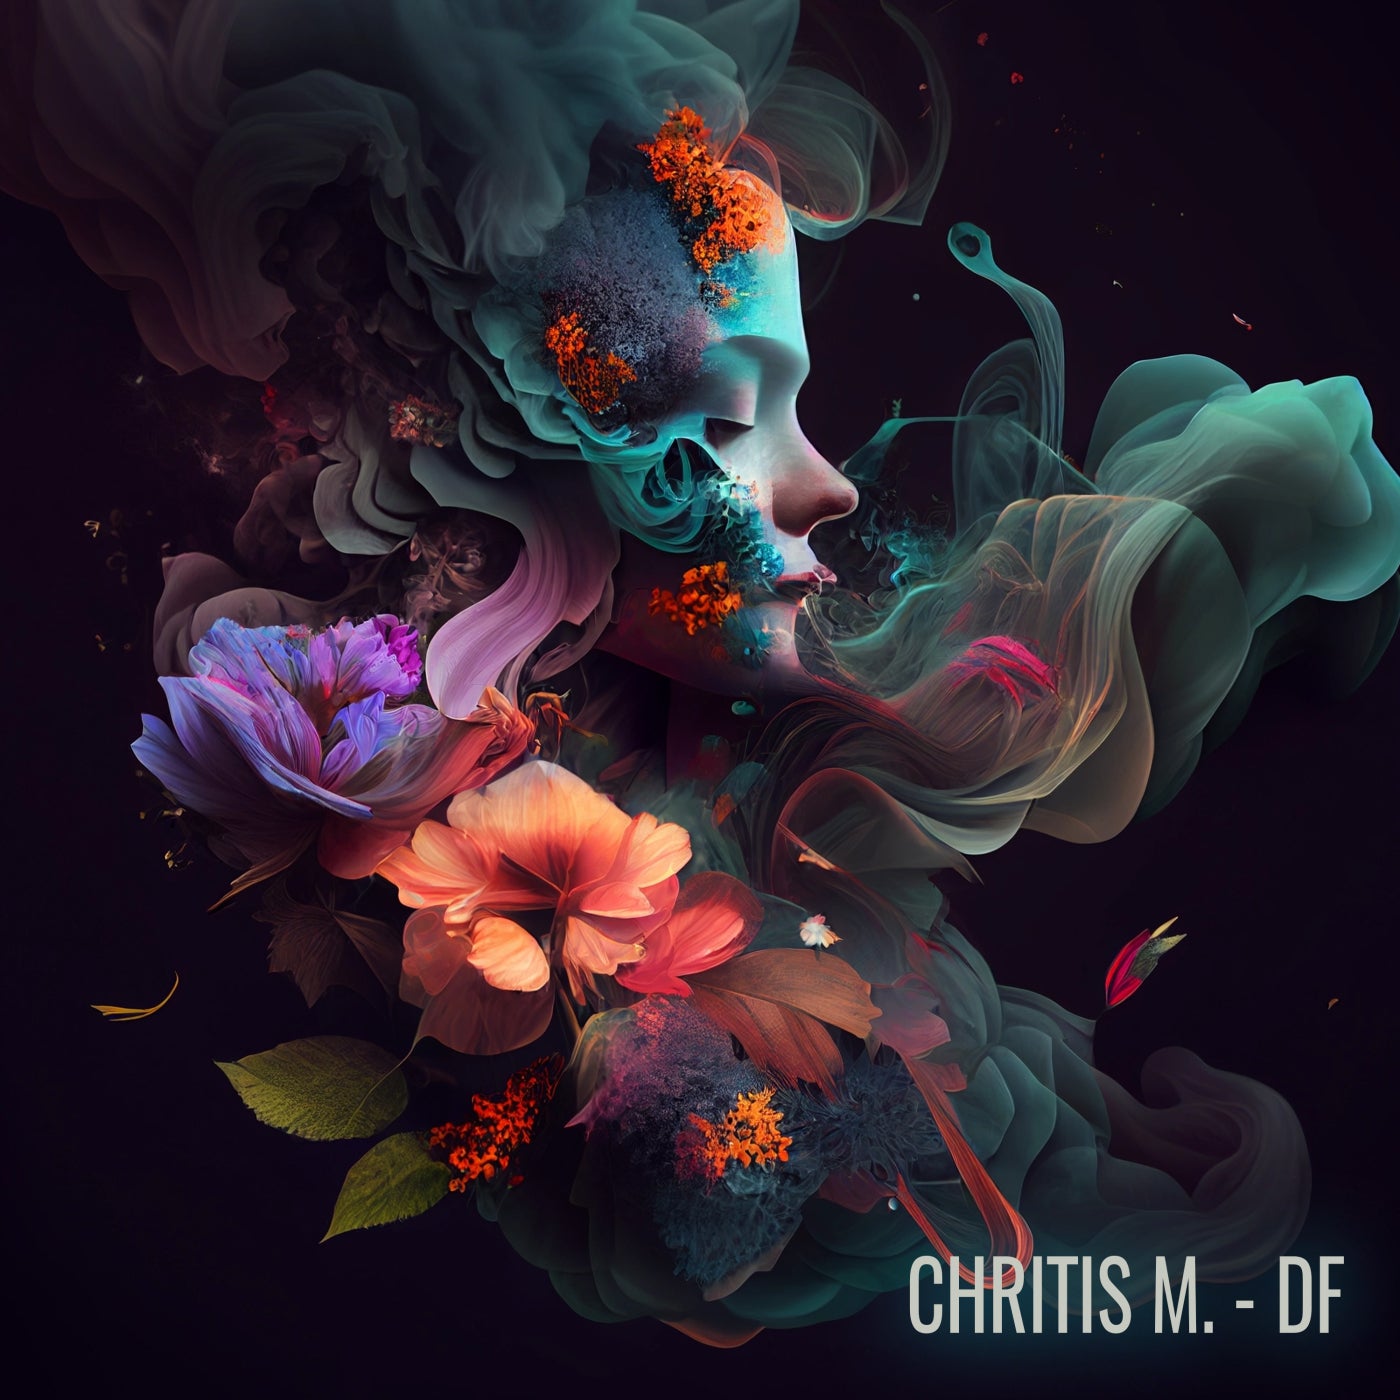 Chritis M. – Df [CLASSIC003]